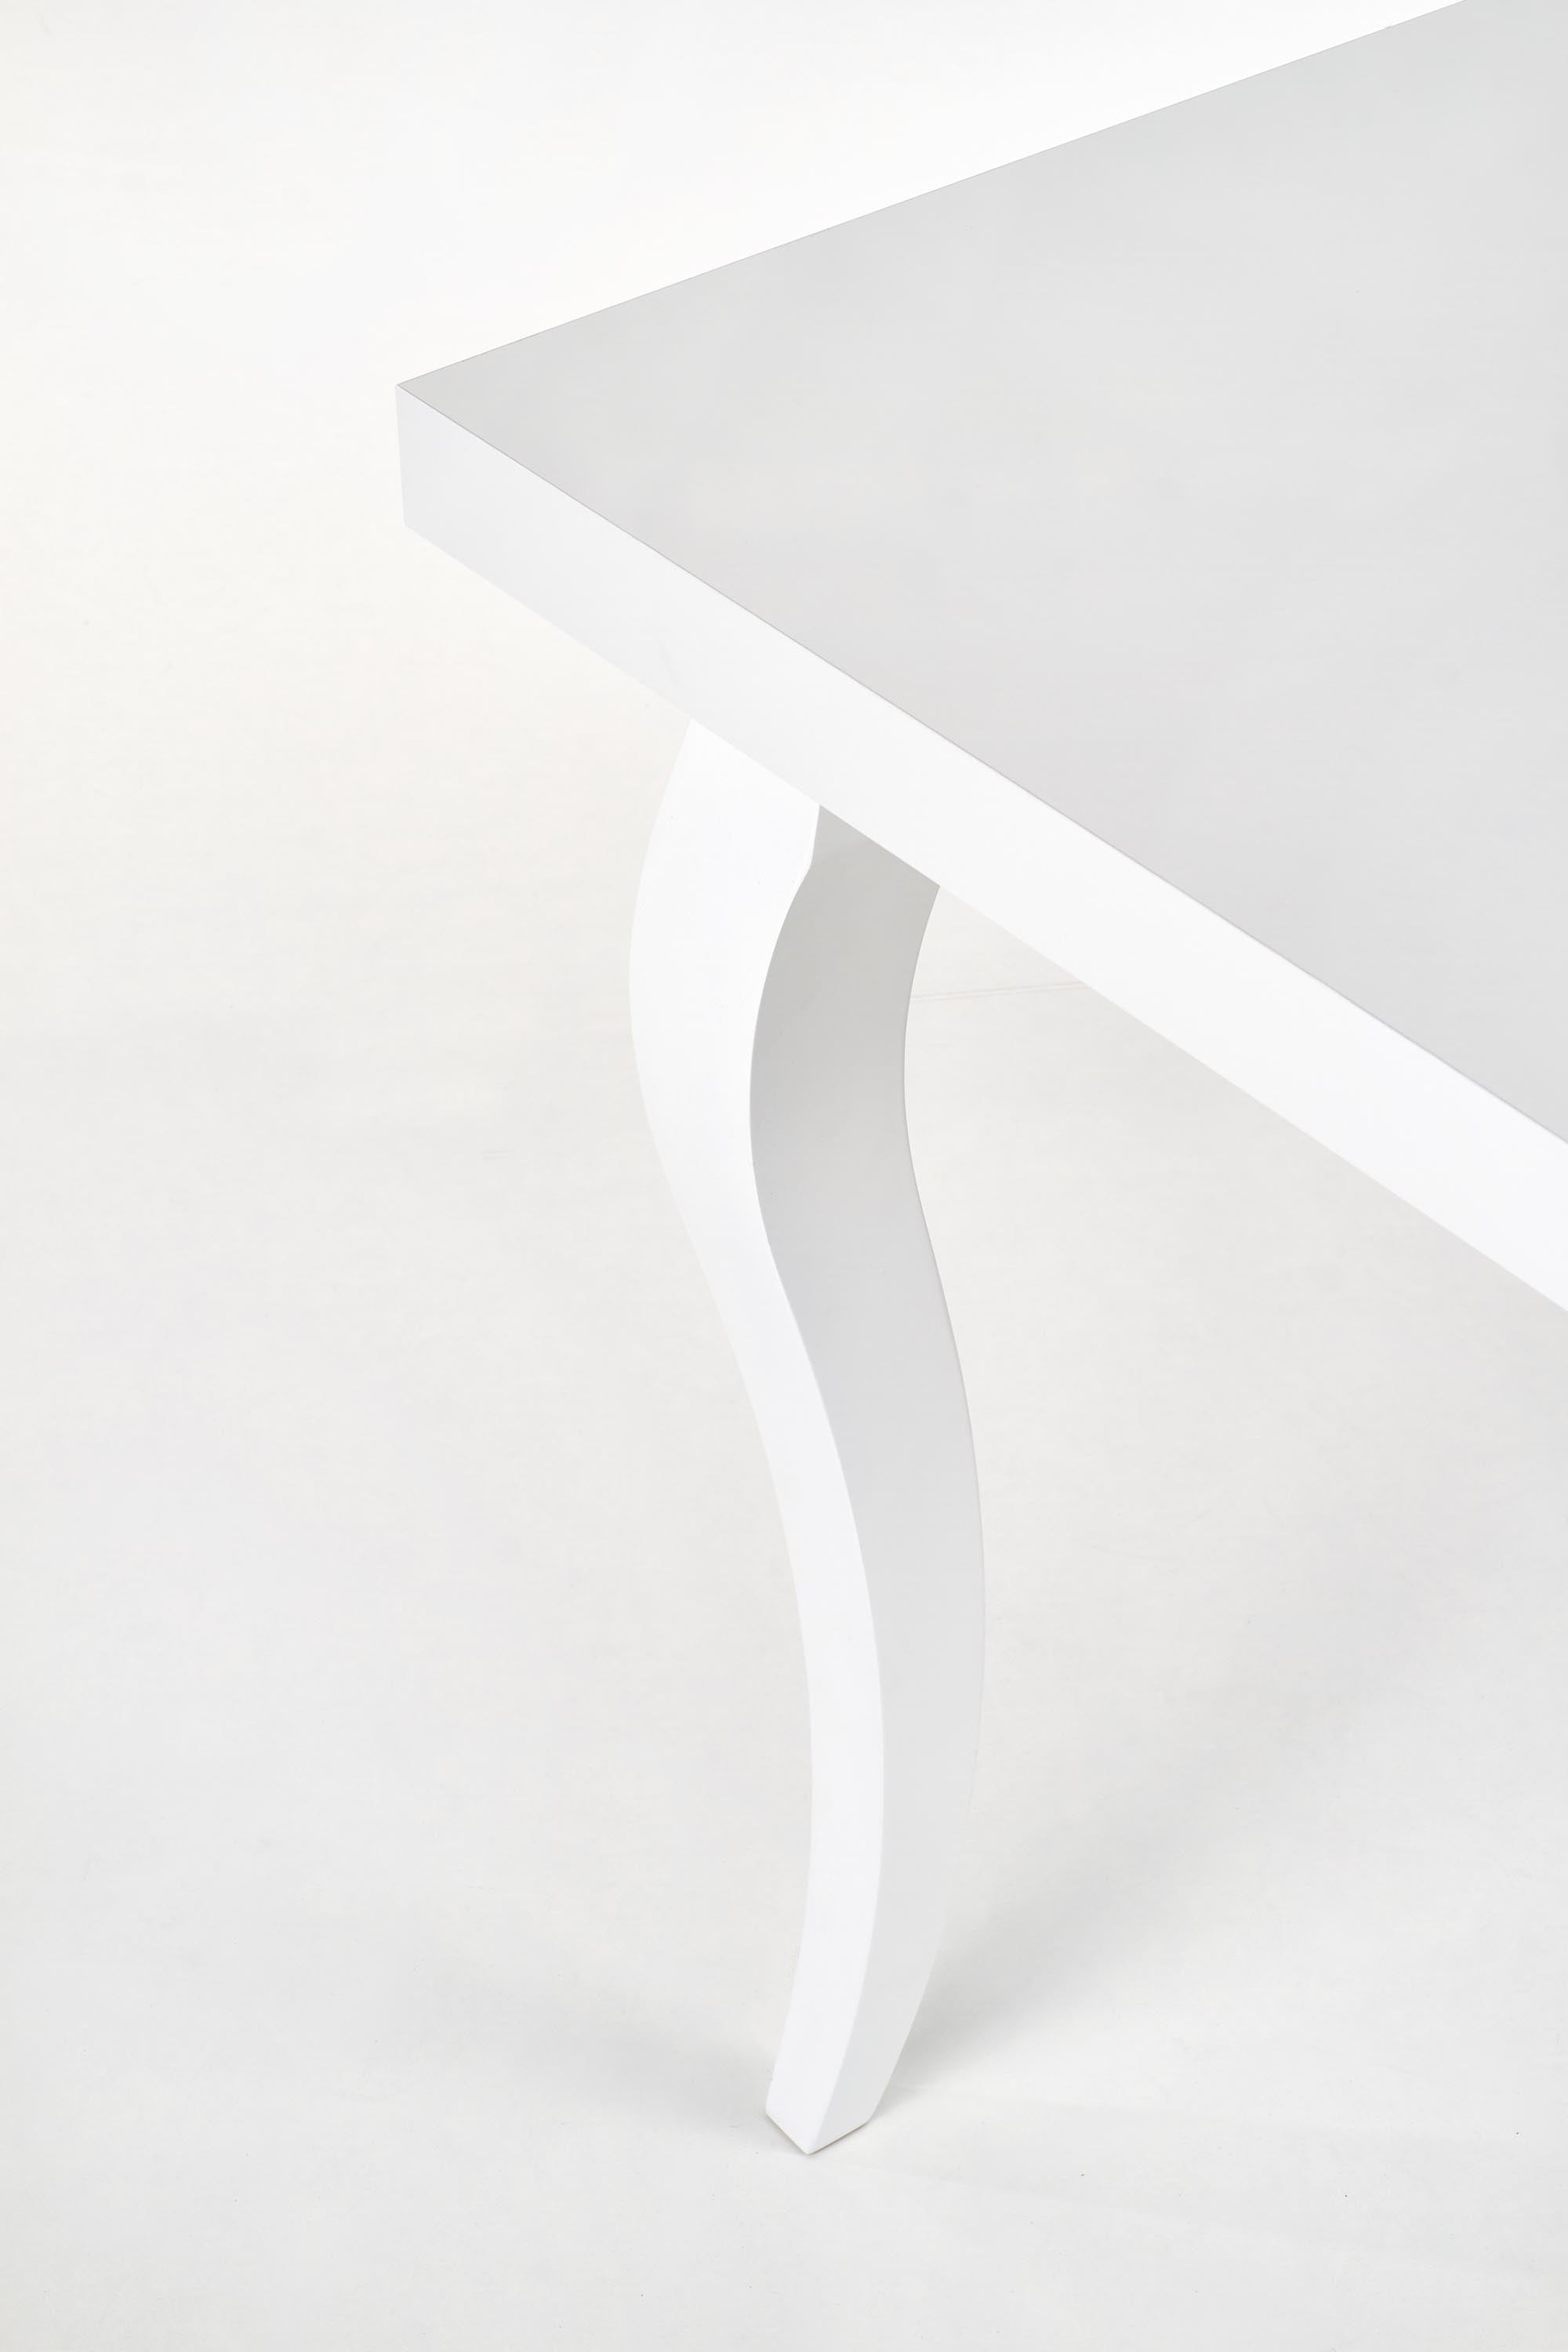 Drake II asztal, 160-240 x 90 cm - Marco Mobili Bútoráruház - Étkezőasztal